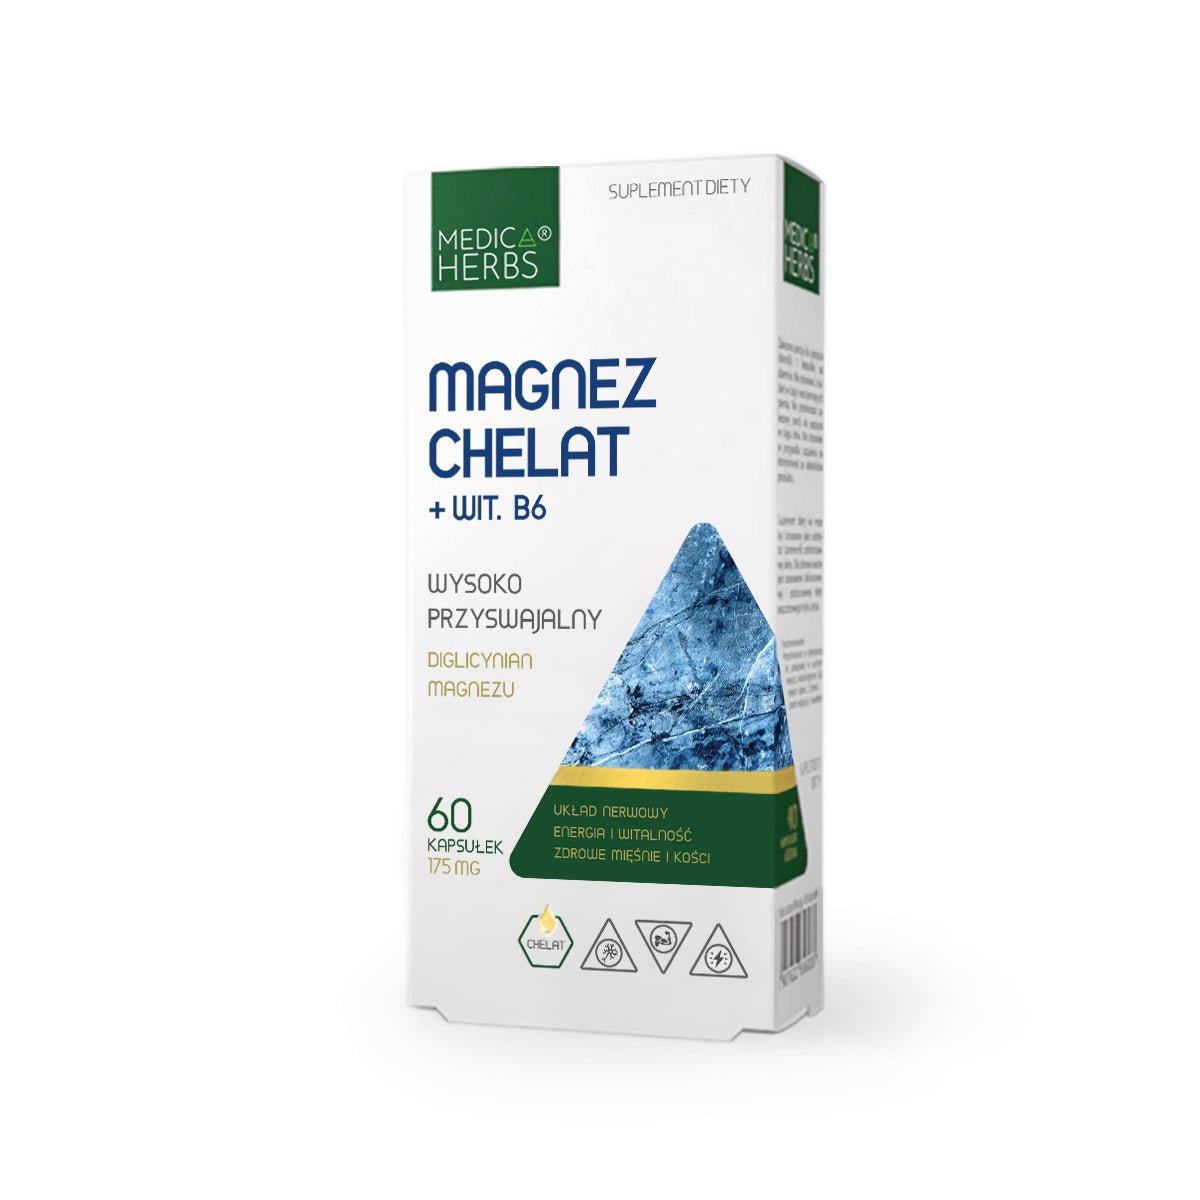 Magnez Medica Herbs Magnez Chelat + Wit. B6 60 caps - Sklep Witaminki.pl